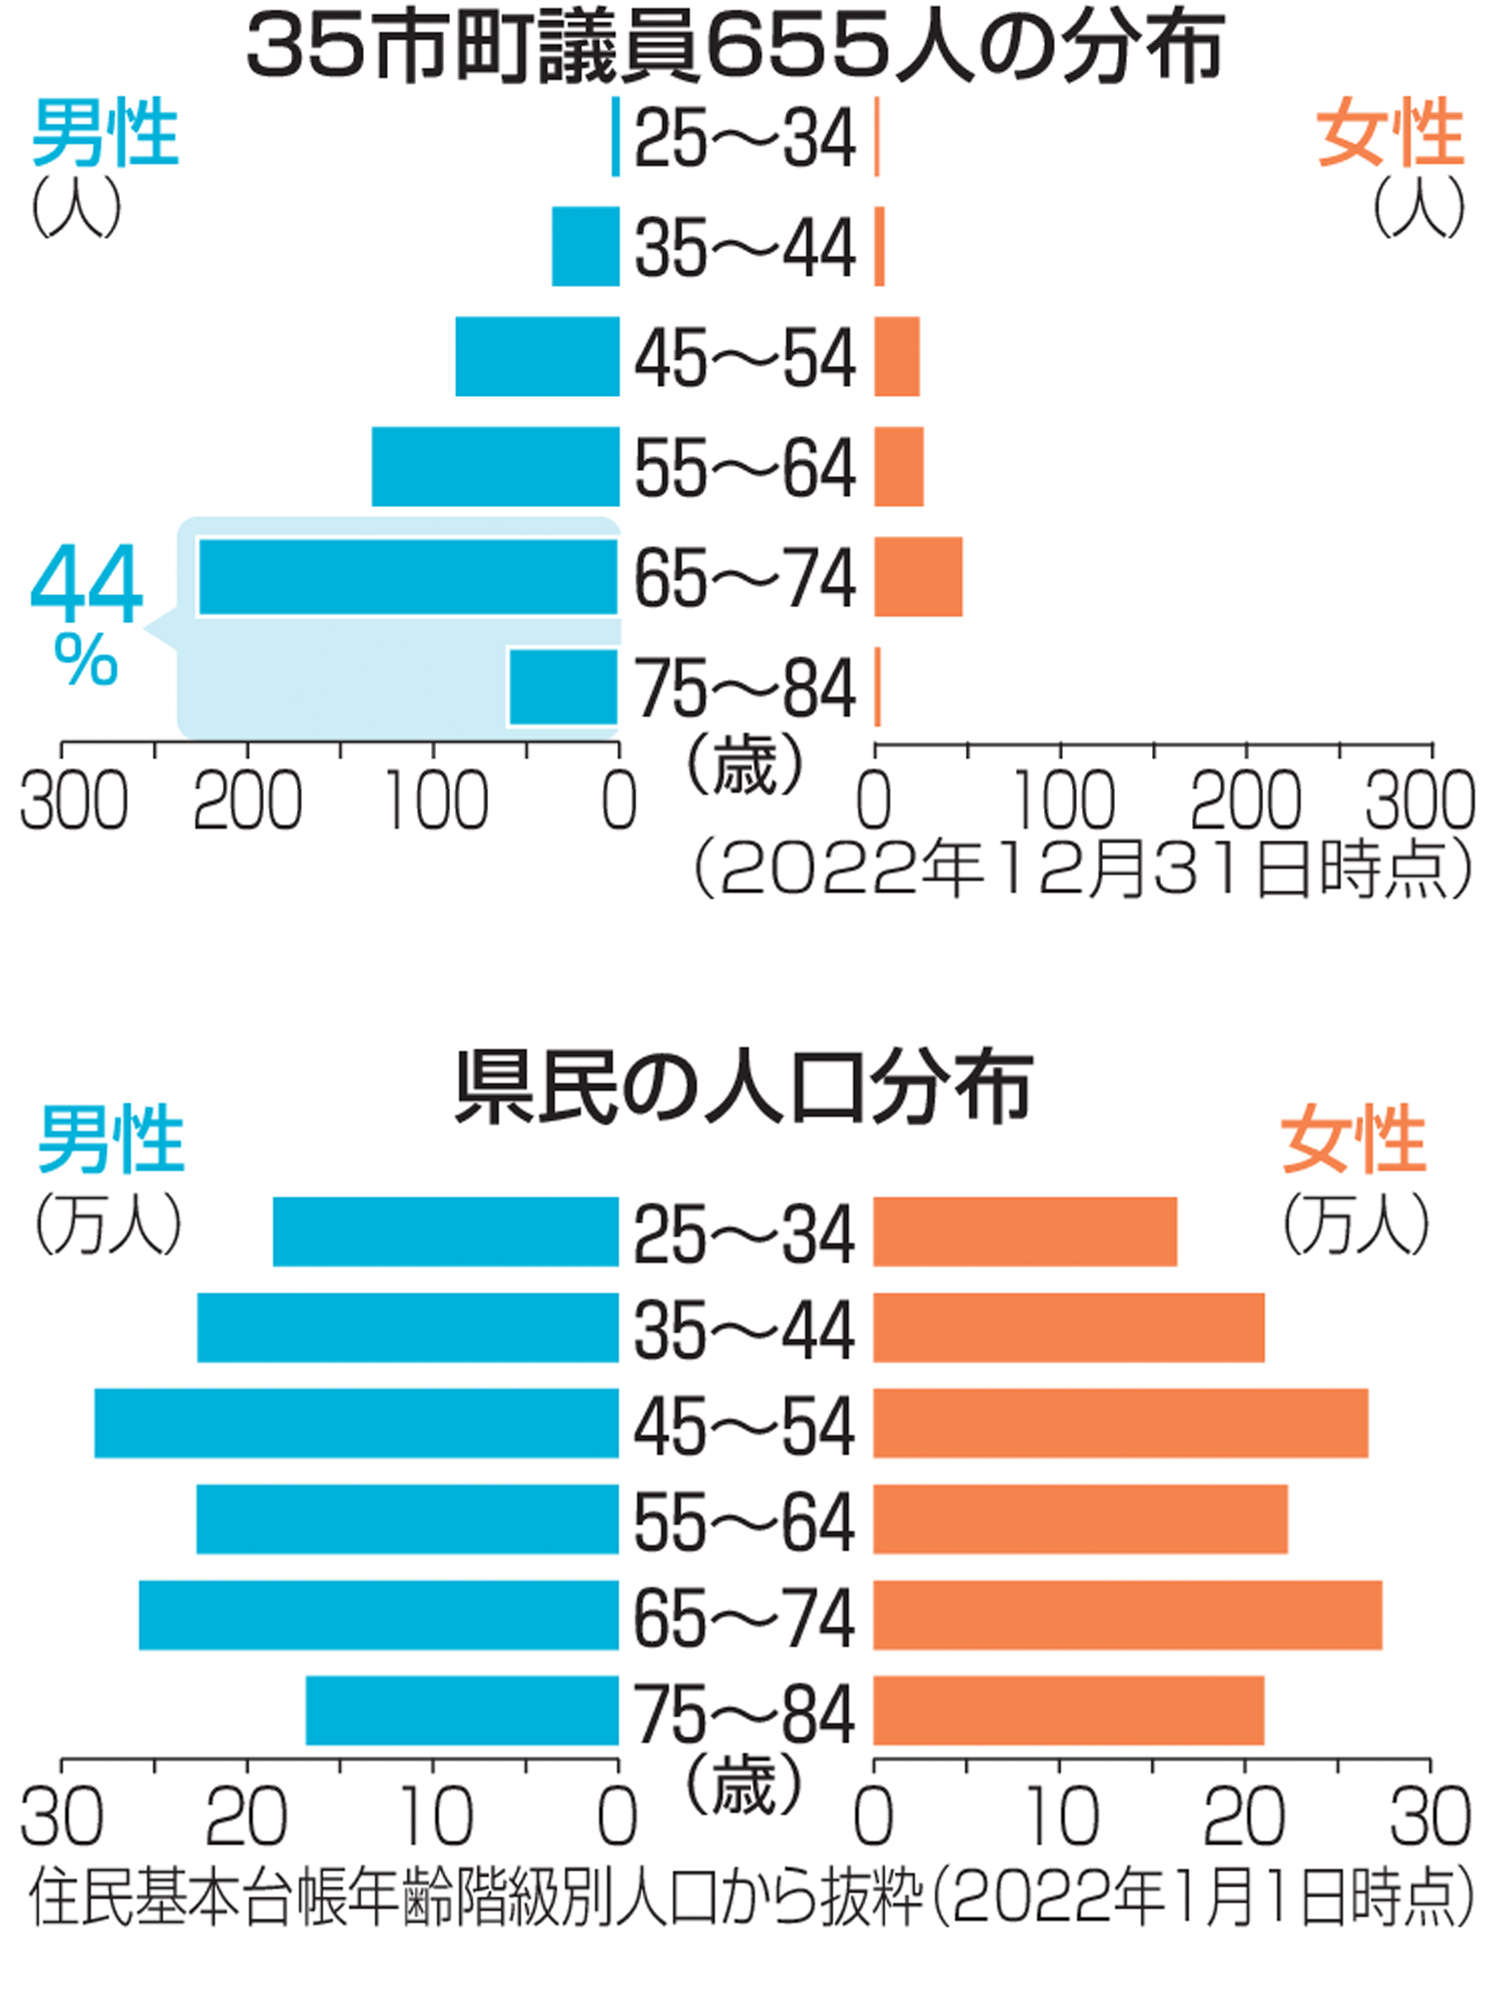 Ｐｒｅｍｉｕｍ Ｌｉｎｅ 竹の経済史 西日本における竹産業の変遷